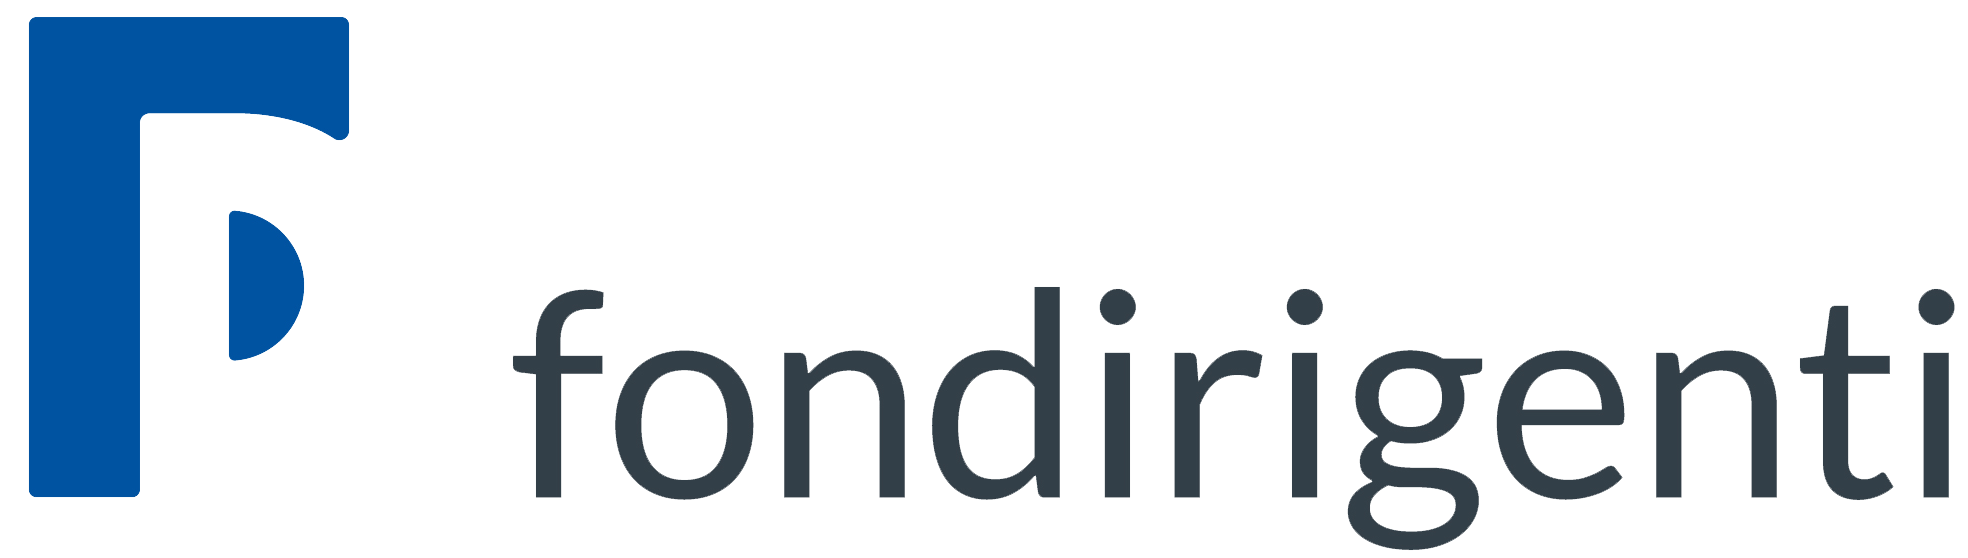 Formazione finanziata brescia: logo Fondirigenti - In Training